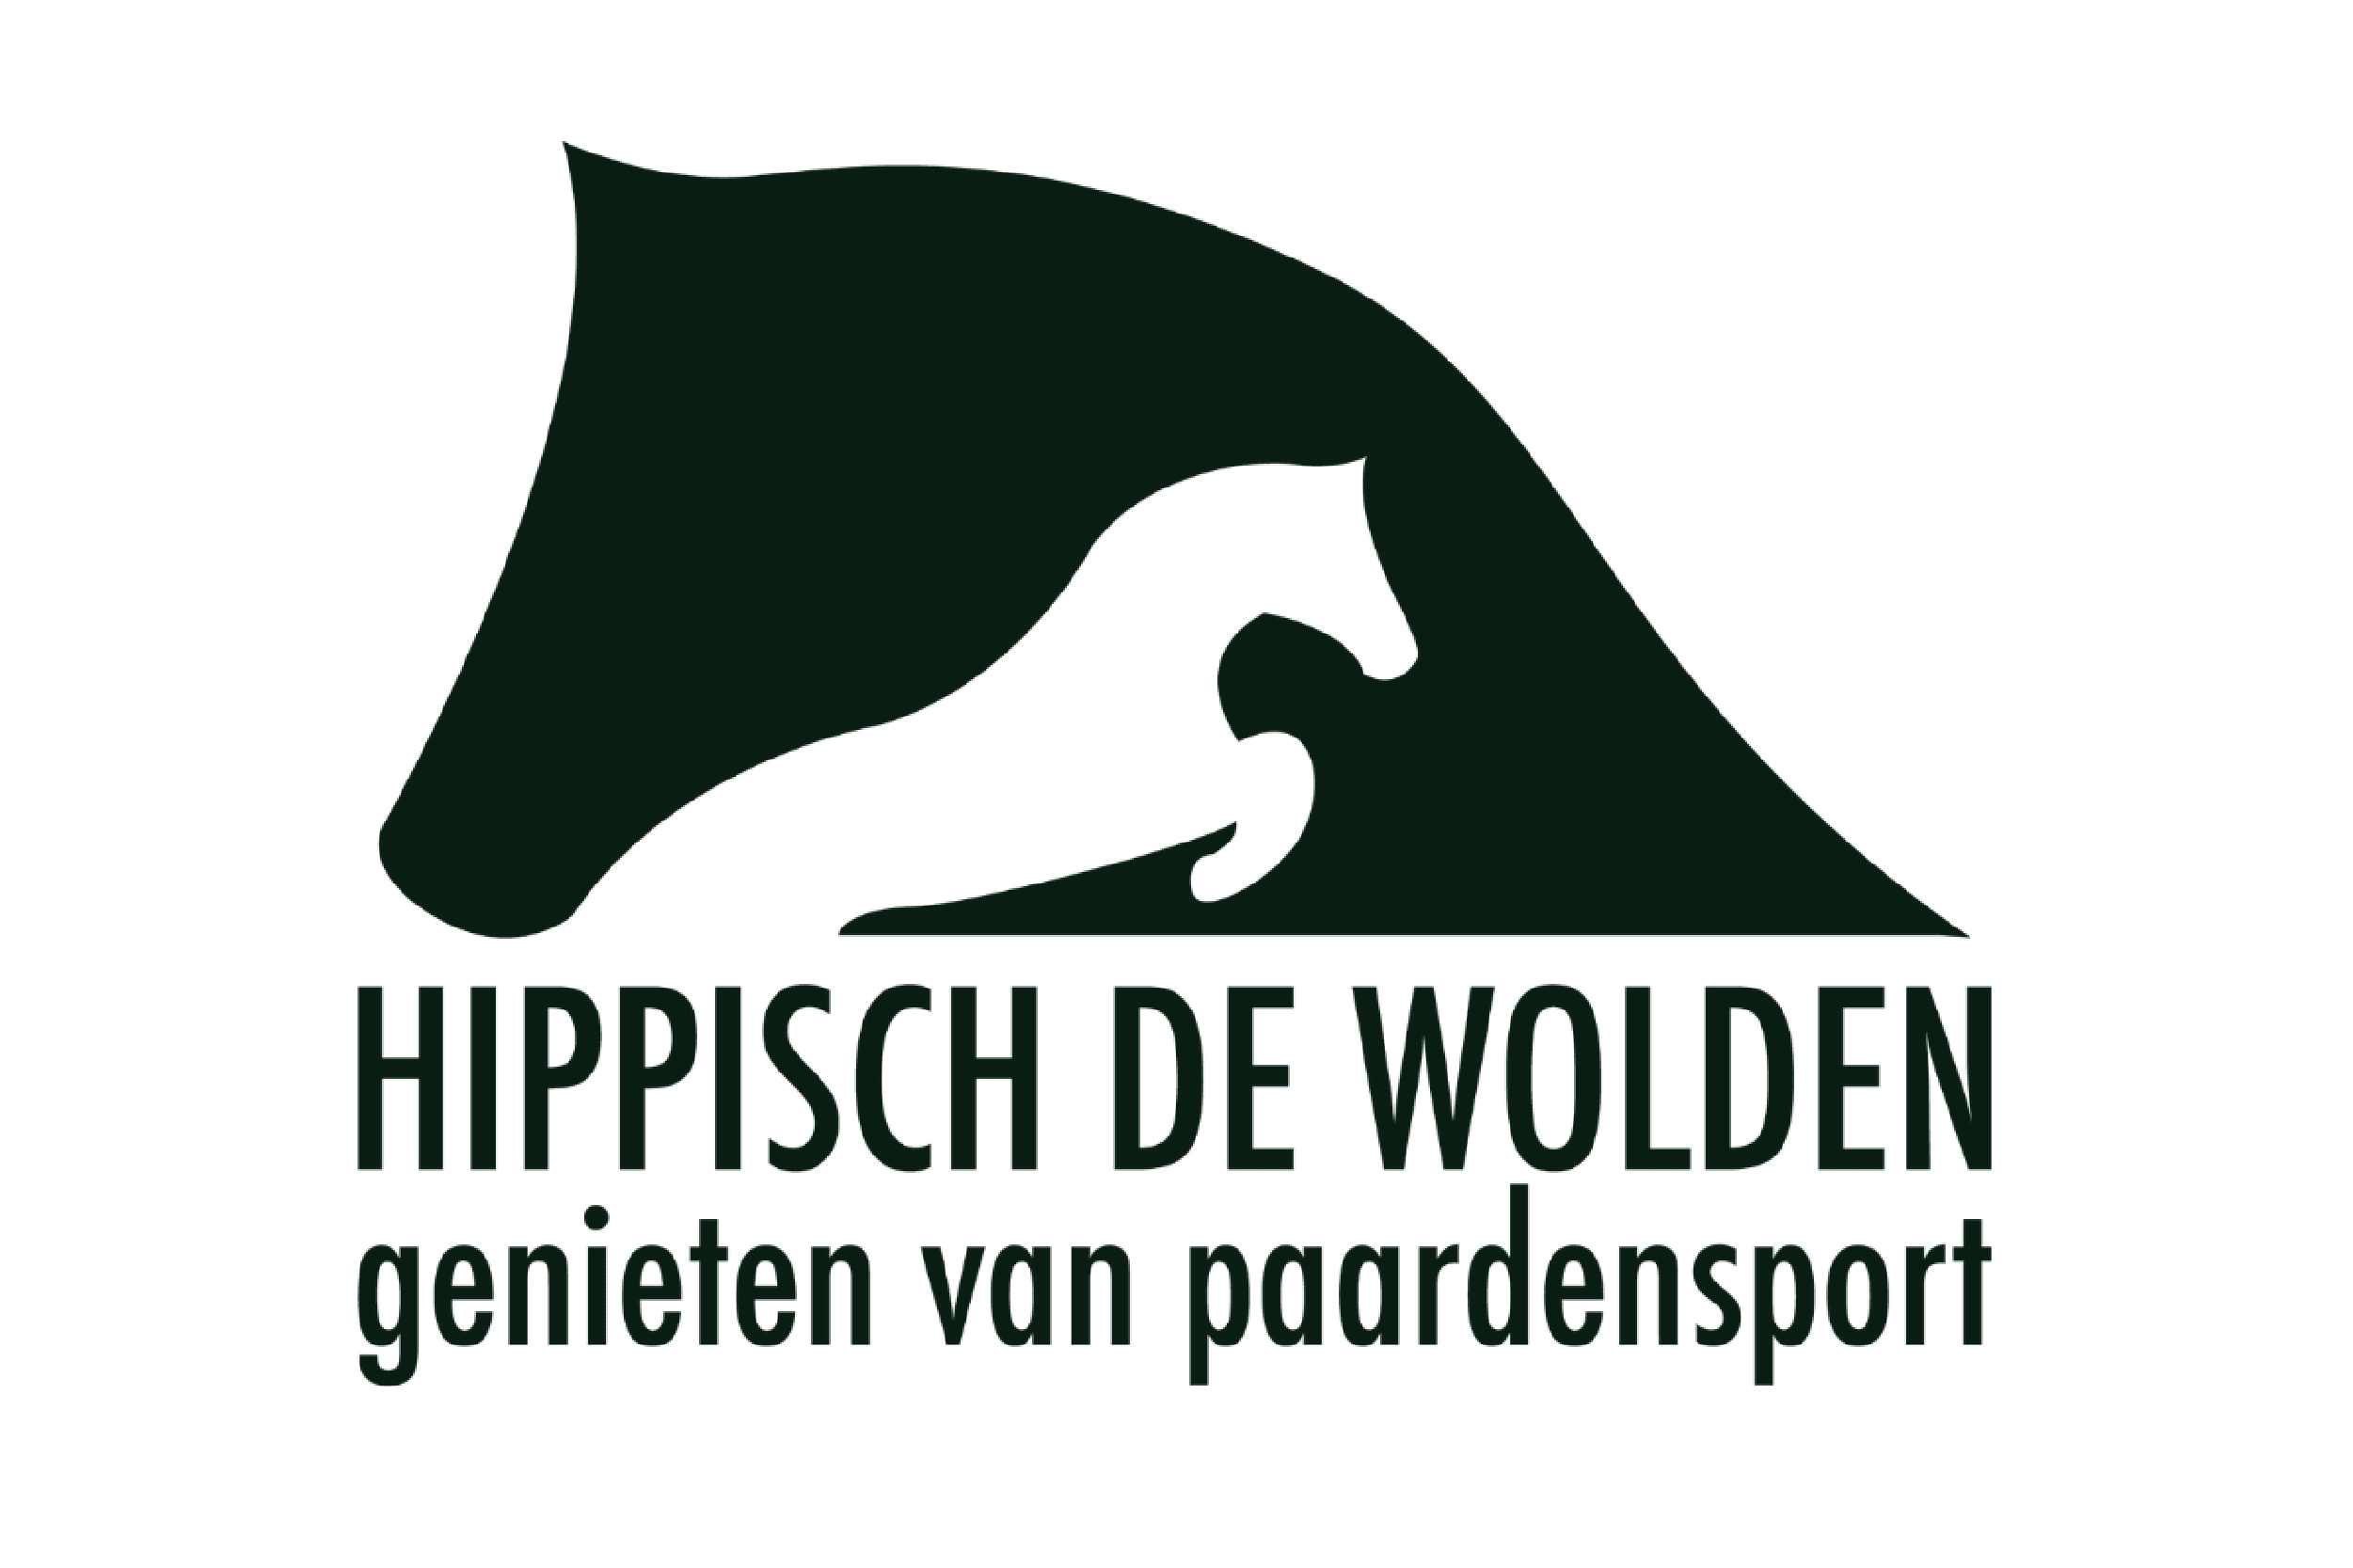 Het logo van Hippisch de Wolden